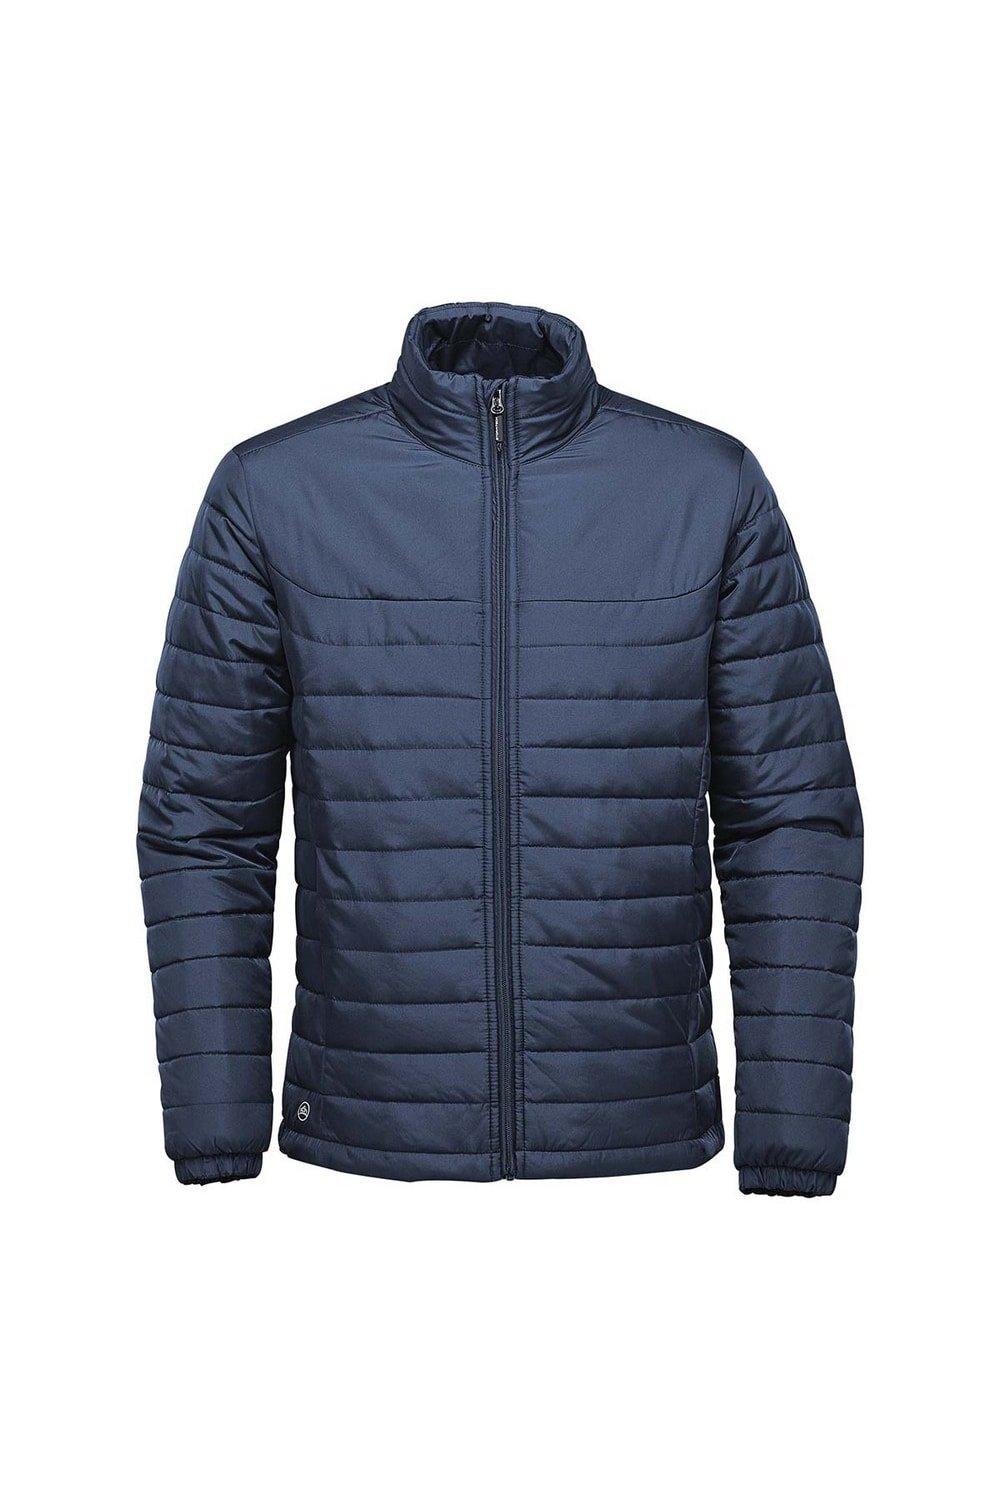 Стеганая куртка с капюшоном Nautilus Stormtech, темно-синий стеганая куртка с капюшоном montego темно синий